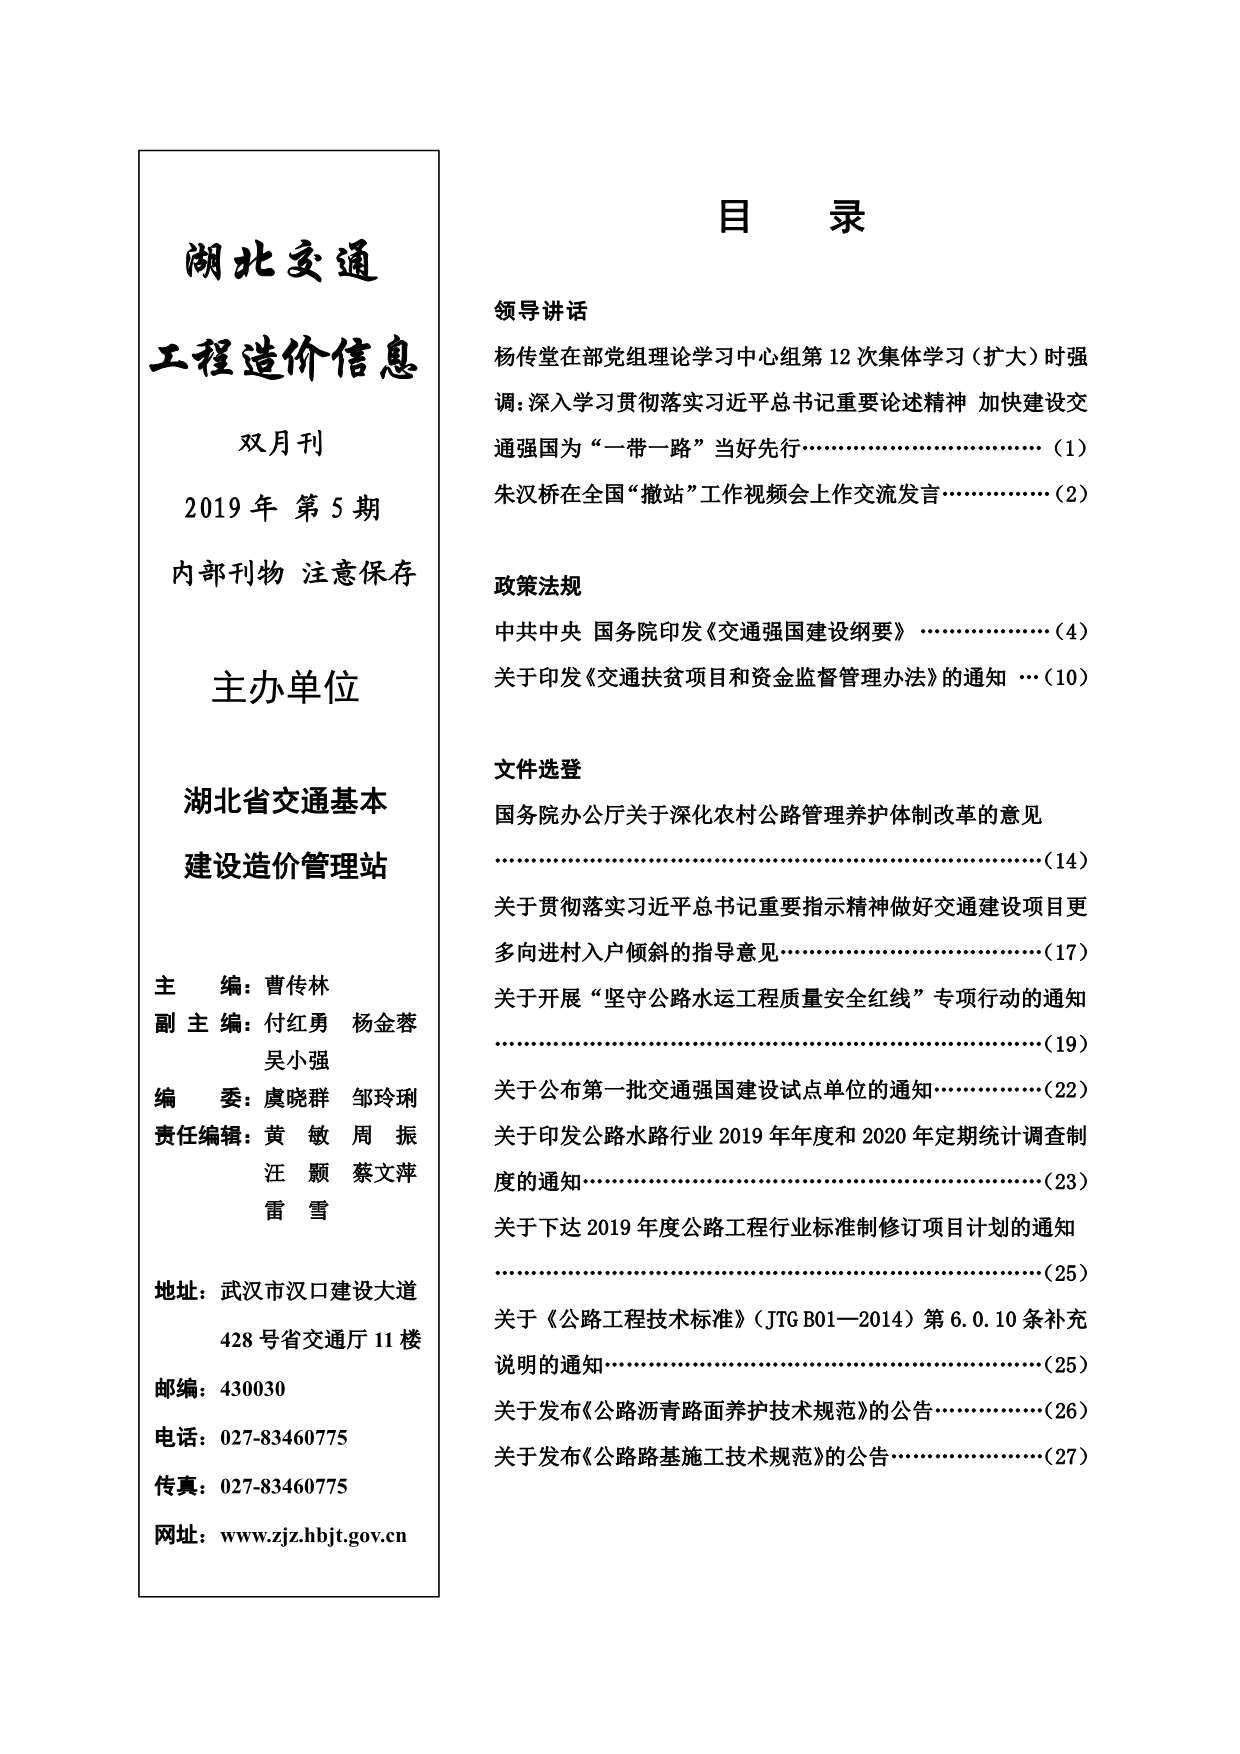 2019年5期湖北交通造价信息期刊PDF扫描件